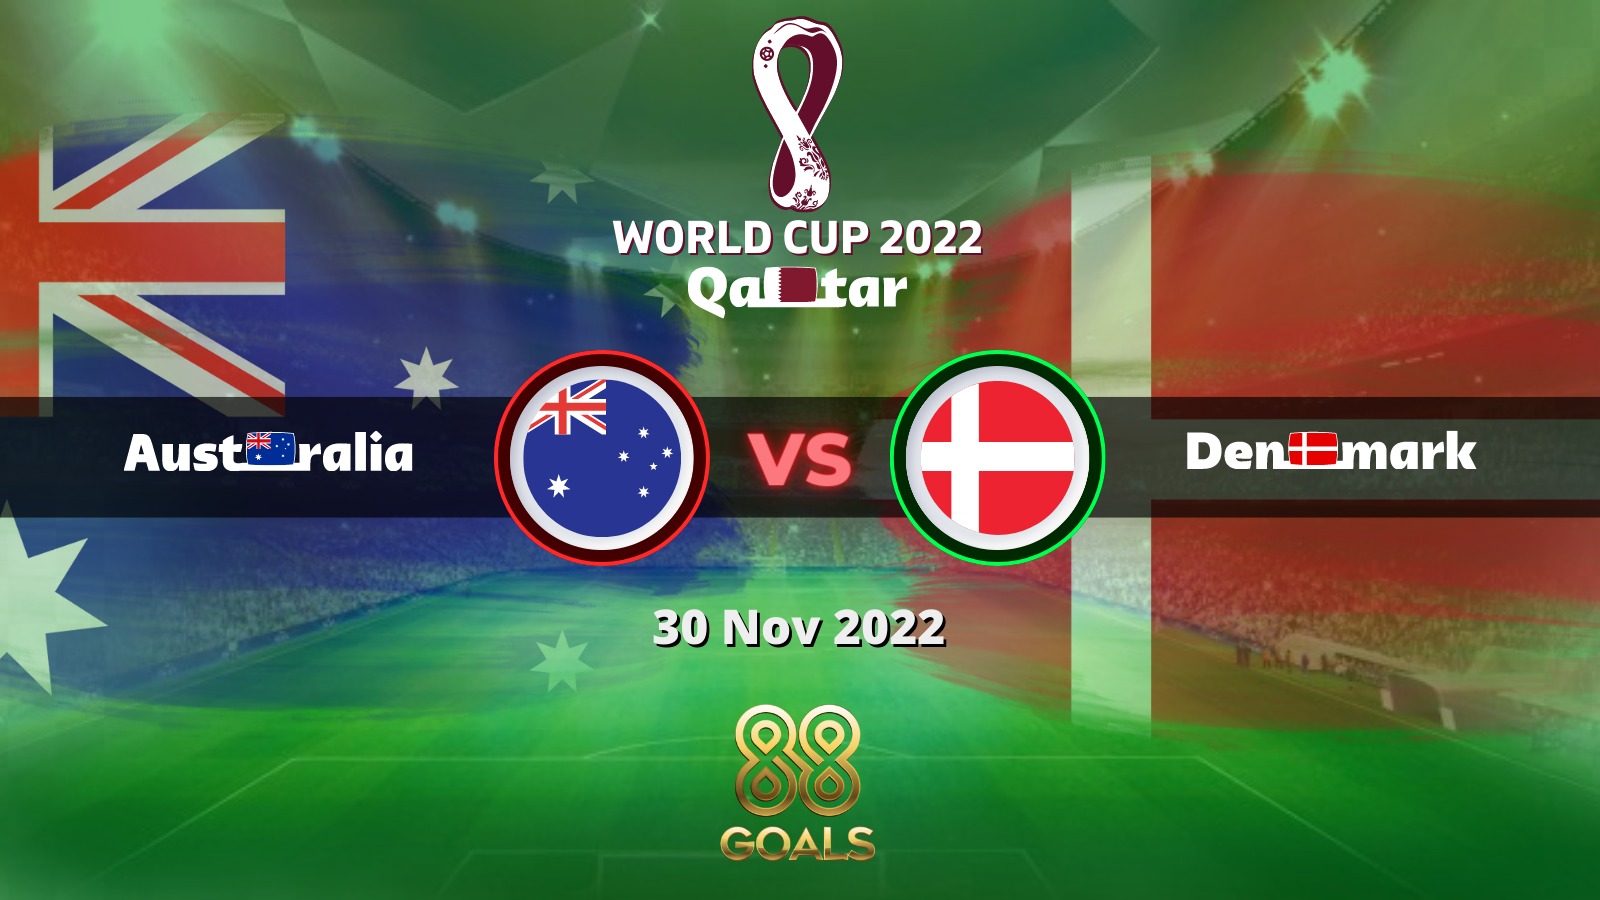 Australia vs Denmark betting